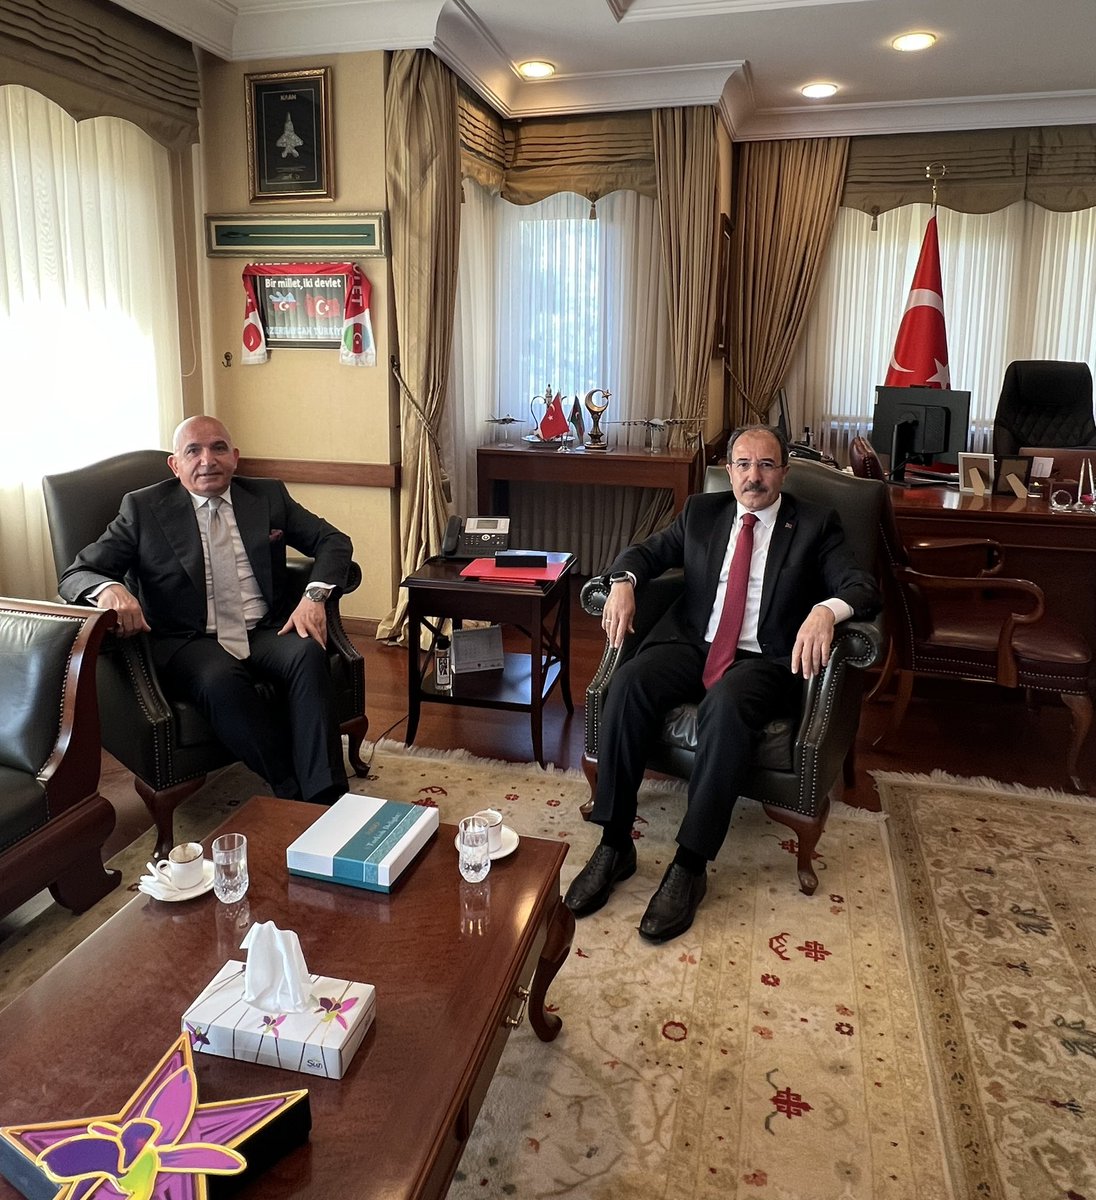 Ziraat Bankası Azerbaycan Genel Müdürü Selçuk Demir bey ile verimli bir görüşme gerçekleşirdik.